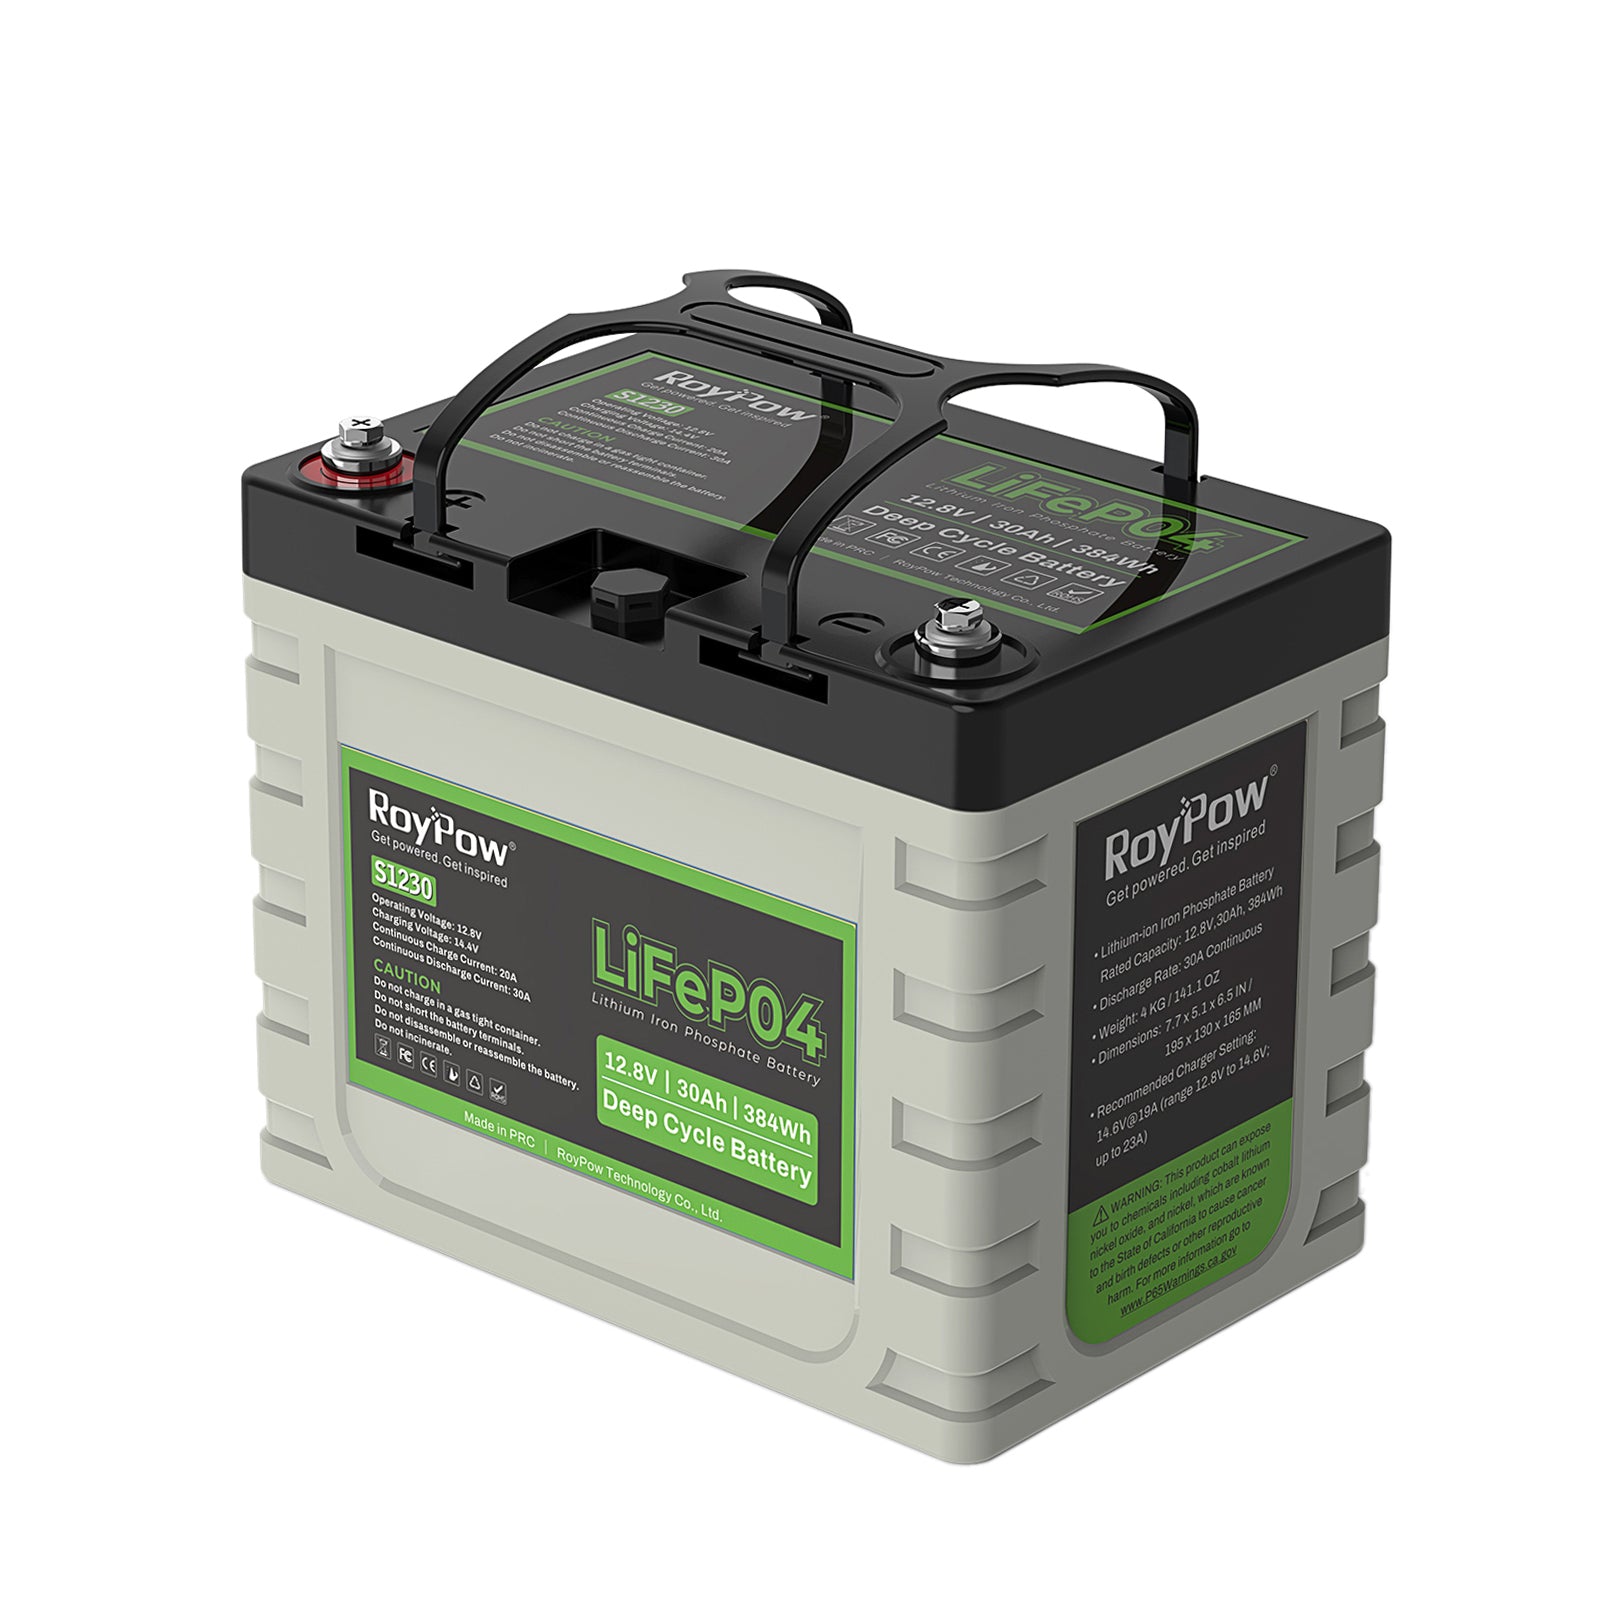 12V 6Ah LiFePO4 Lithium Battery, RoyPow 12V 6Ah LiFePO4 Battery 3500 Cycles  12V Deep Cycle LiFePO4 Battery with Low-Temperature Cut-Off, 9 Amp